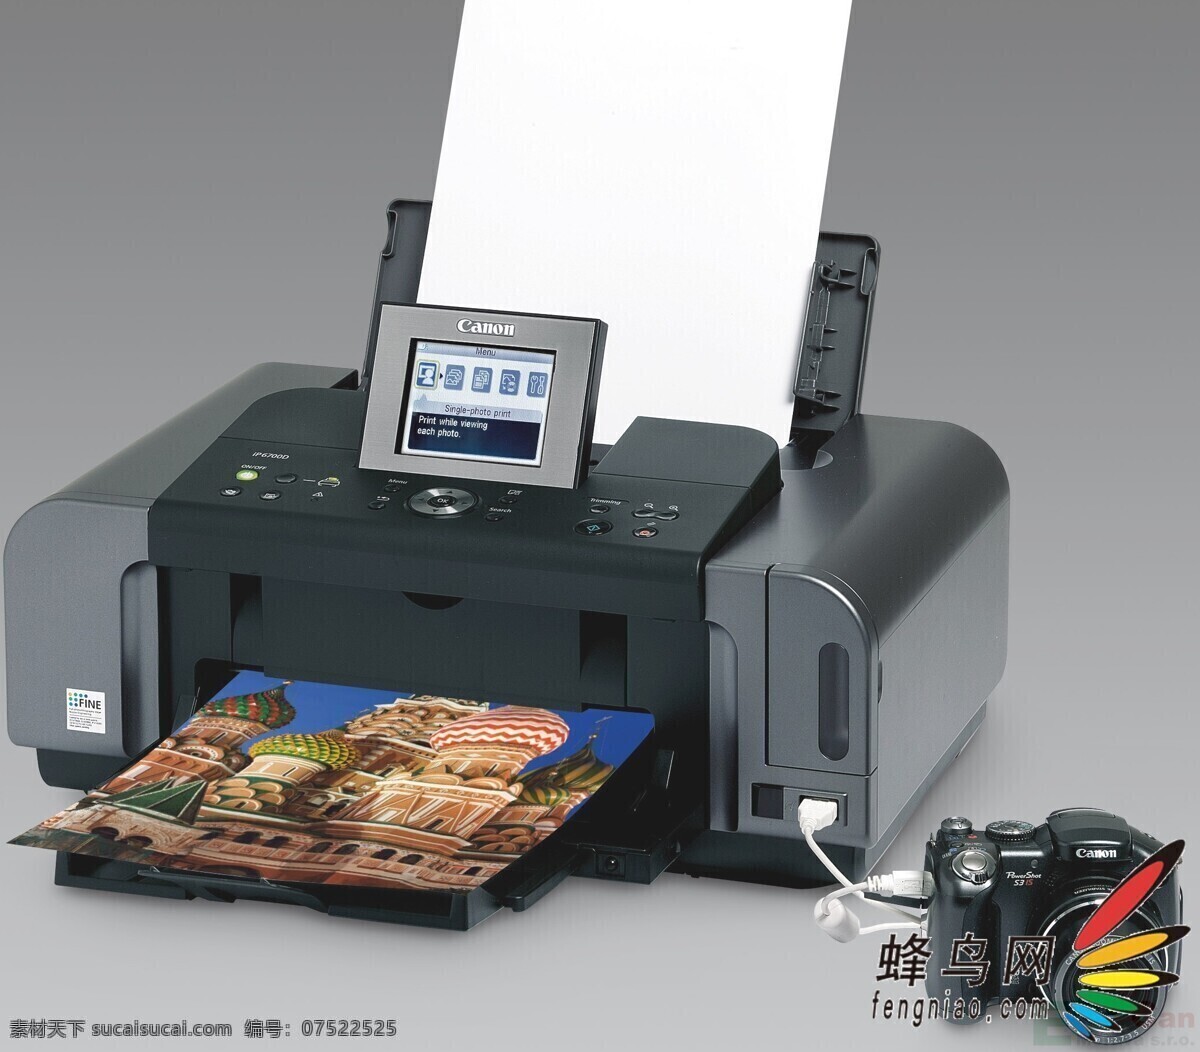 打印机 复印机 设计图库 hp 激光 惠普 风景 生活 旅游餐饮